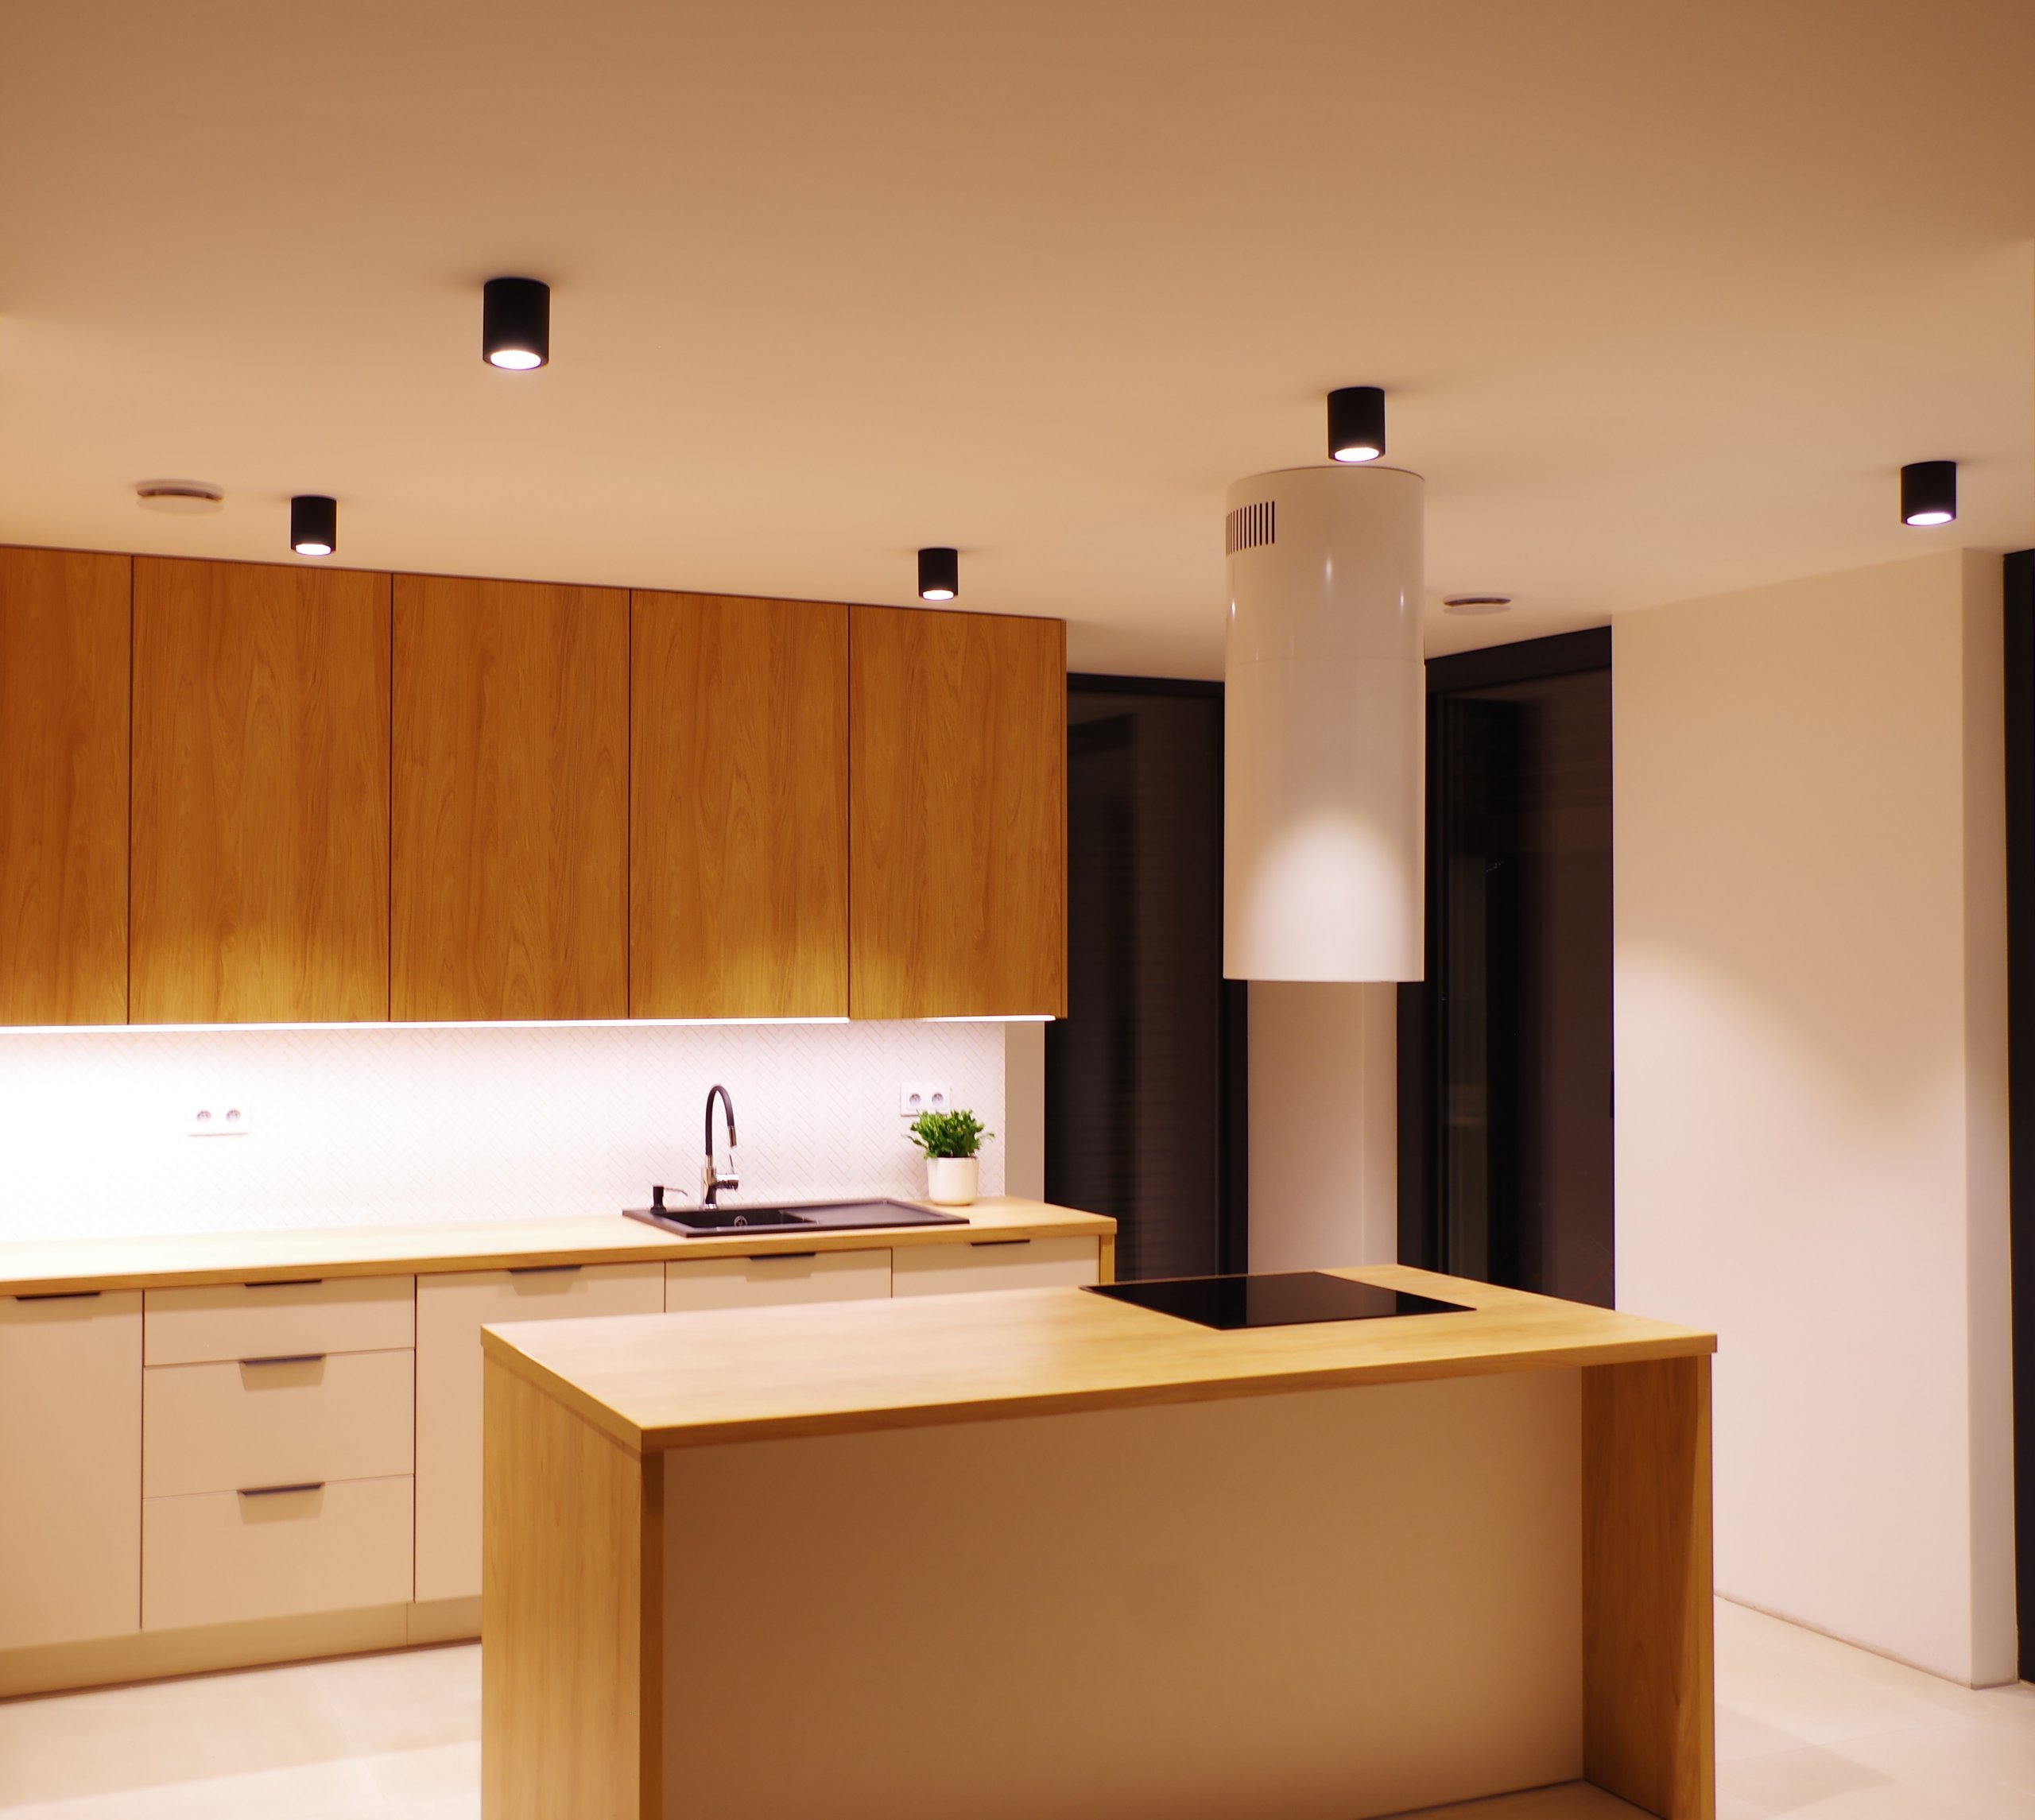 Jak rozmístit LED osvětlení v kuchyni s ostrůvkem